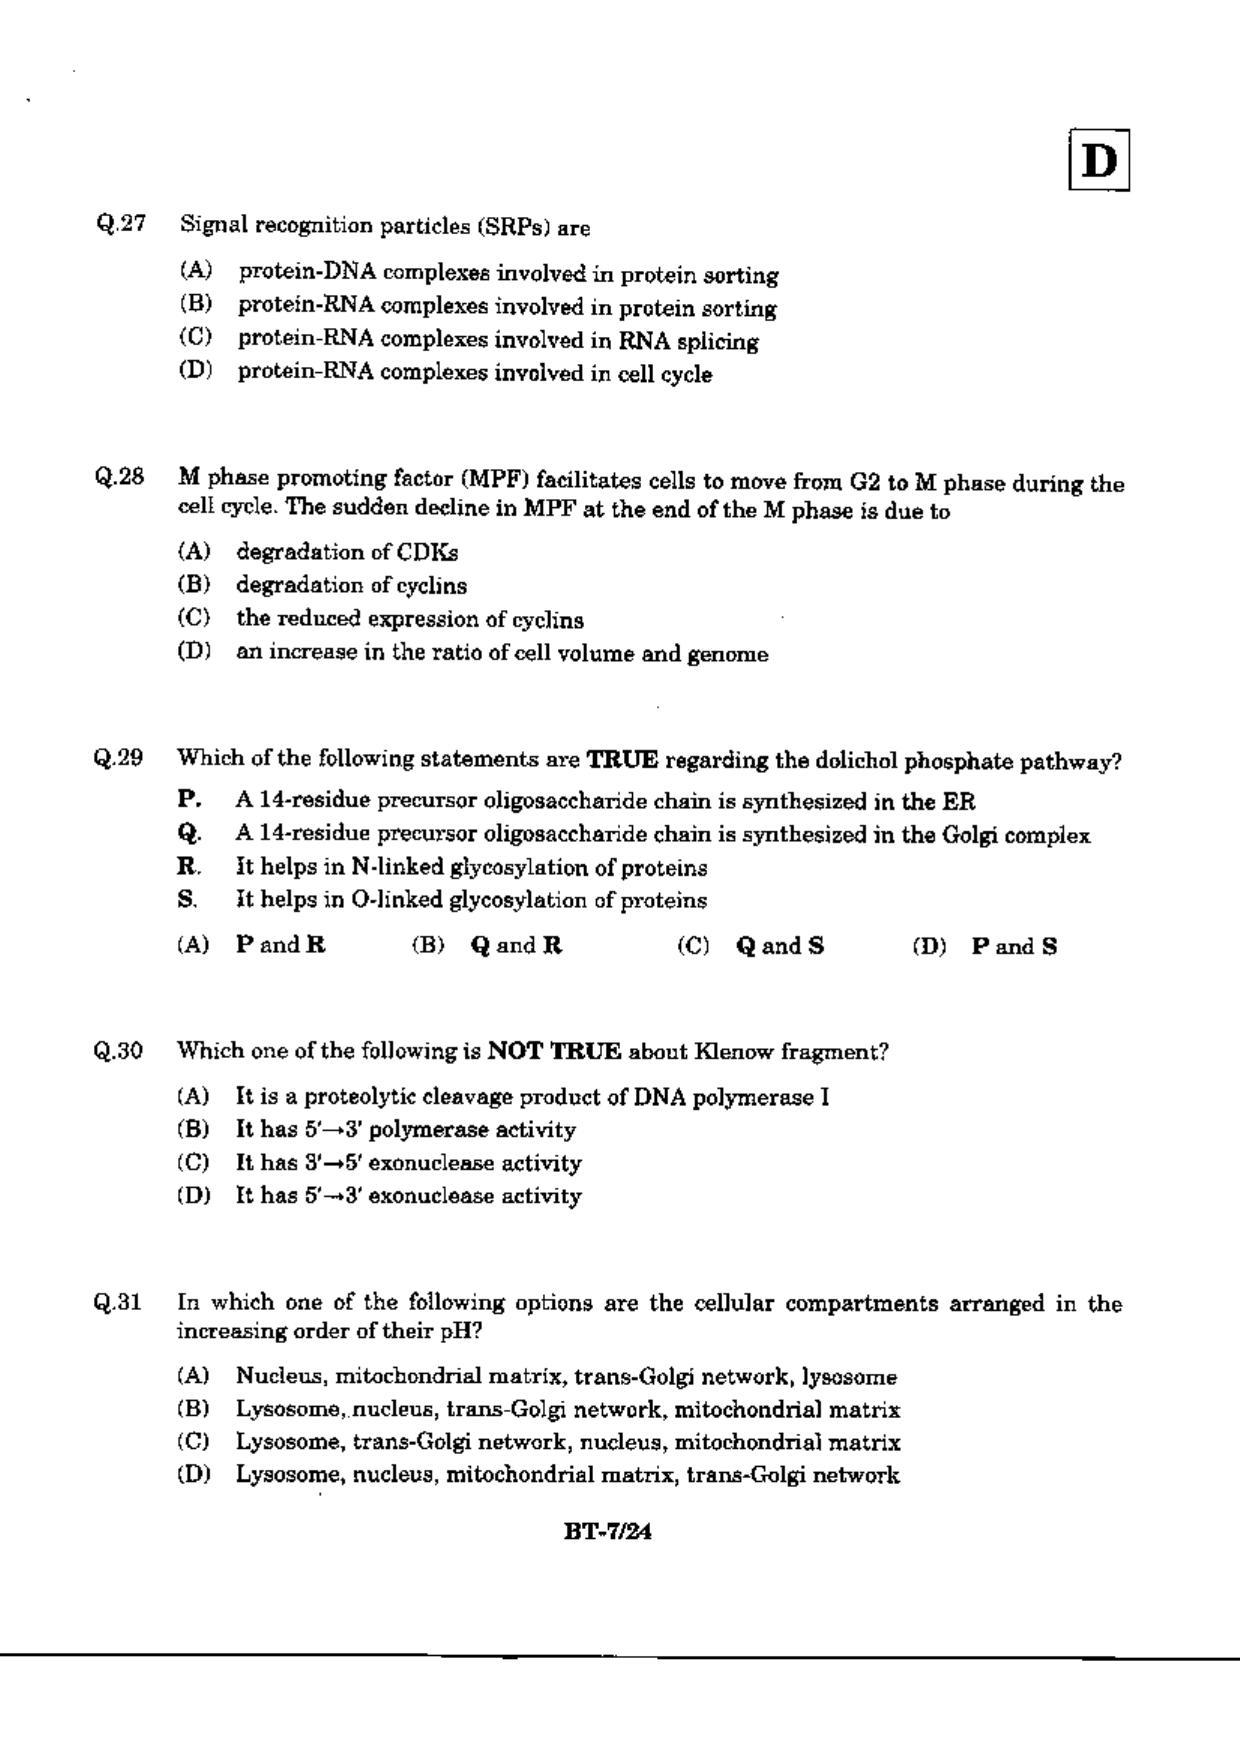 JAM 2010: BT Question Paper - Page 9